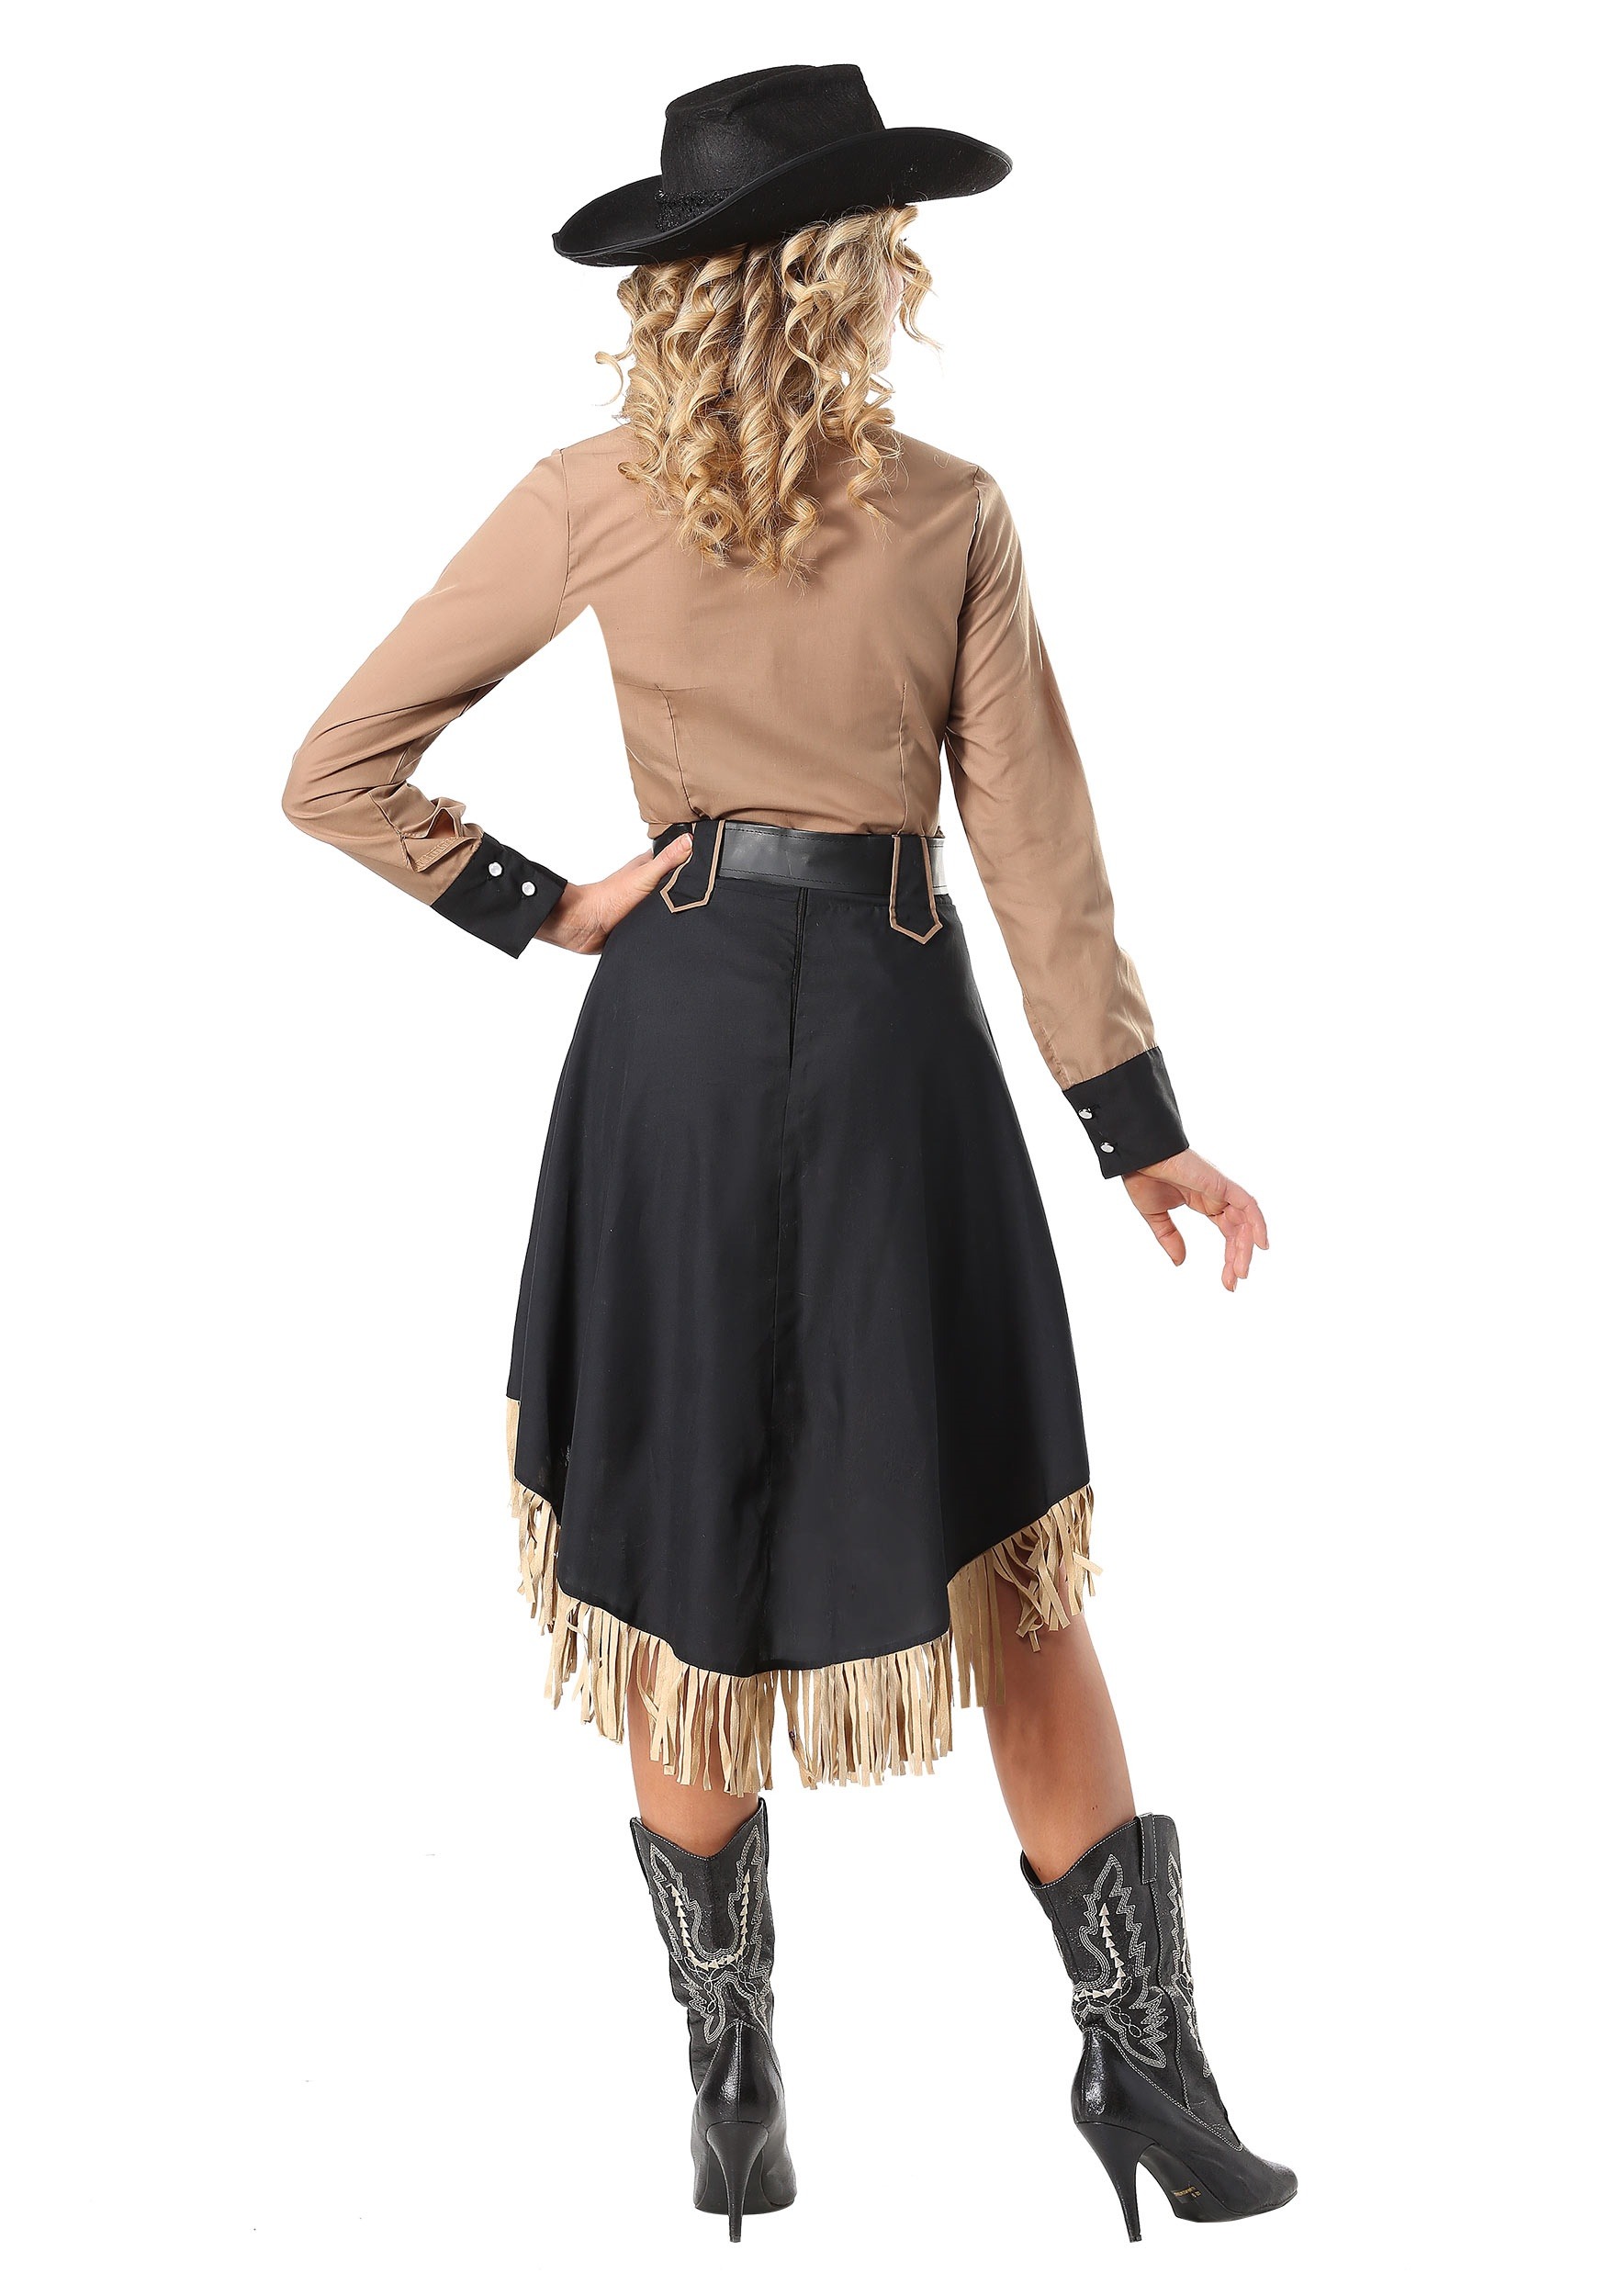 Lasso'n Cowgirl Fancy Dress Costume For Women , Western Fancy Dress Costume , Exclusive